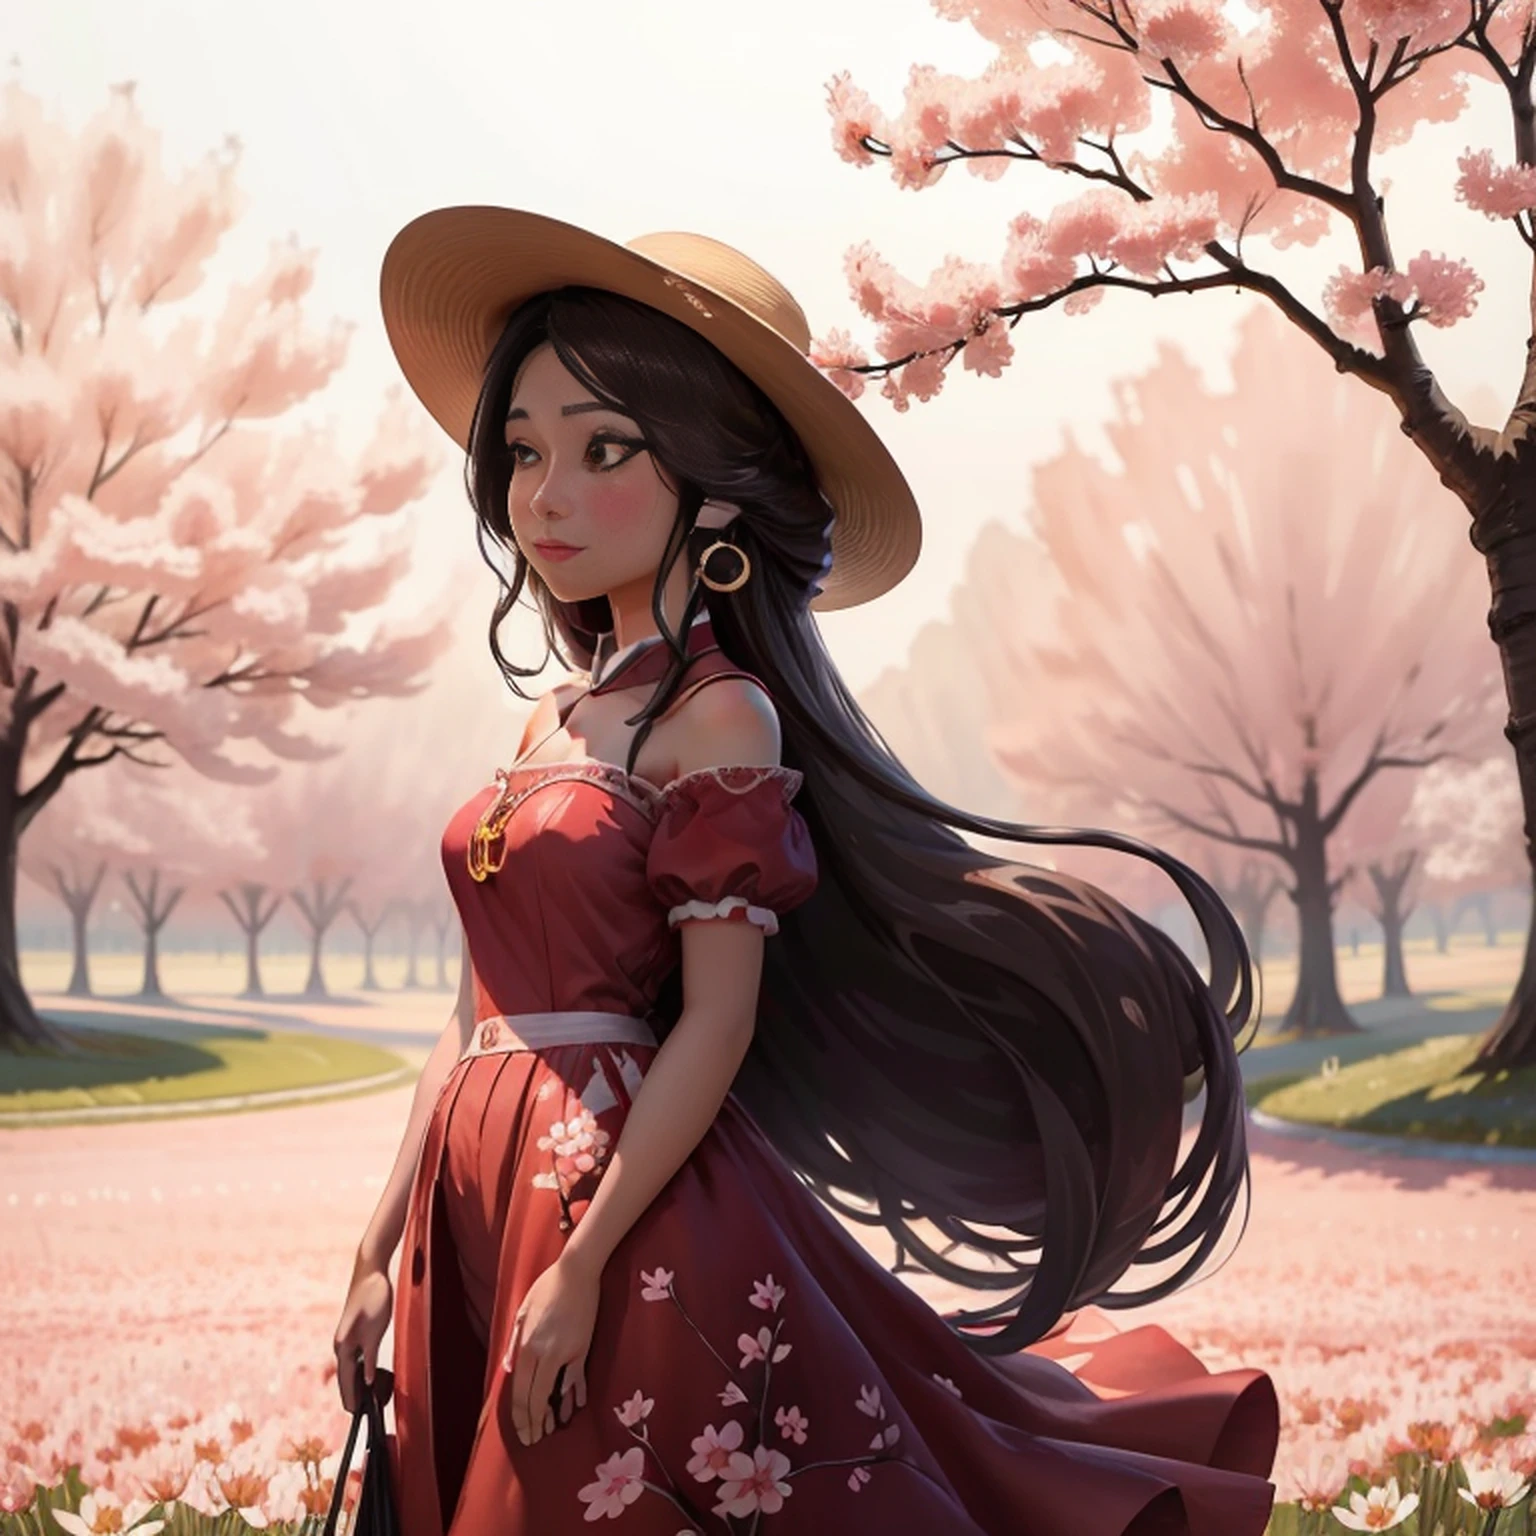 분홍색 홀터넥 드레스를 입고 모자를 쓴 채 벚꽃밭에 서있는 아름다운 중국 여성이 있습니다., 긴 웨이브 갈색 머리, 선글라스 착용, 키가 크고 마른 체형, 아름다운, 미묘한 미소, 벚꽃밭에 서서, 꽃밭에 서서, 체리 밭에 서있는 여자, girl 꽃밭에 서서, 꽃이 있는 들판에 서서,  꽃밭에서, com 꽃밭 em primeiro plano, 꽃밭에서, 꽃밭, 꽃밭에 서있는 소녀